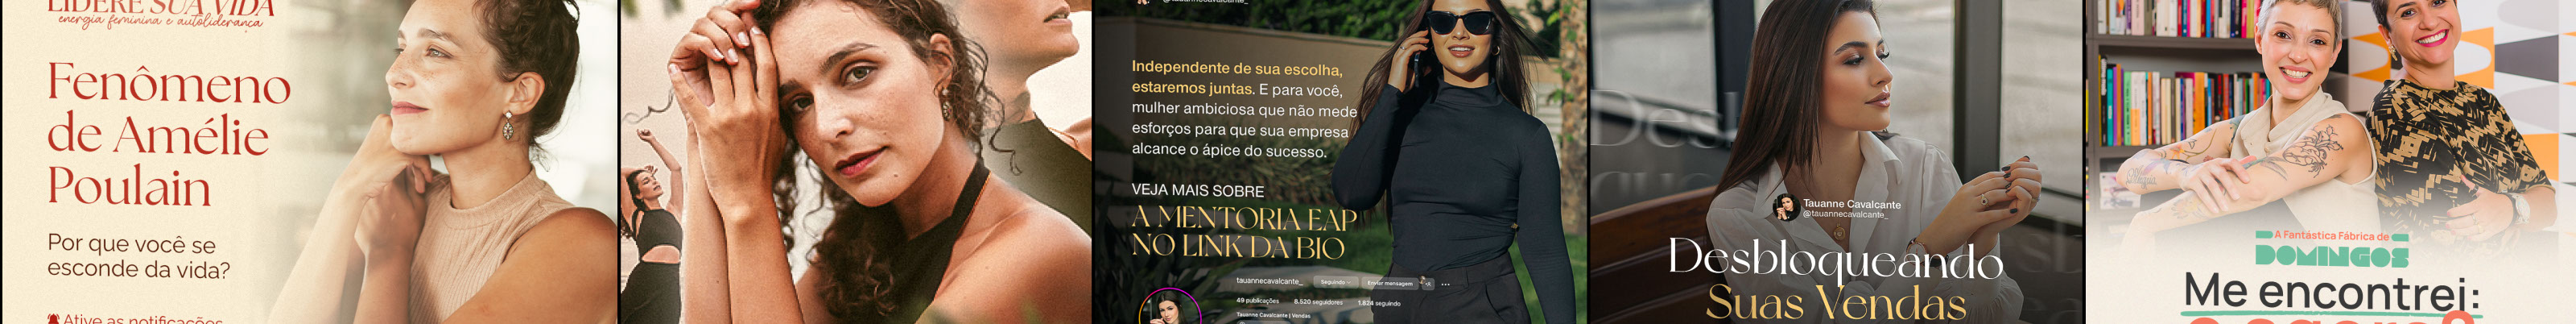 Banner de perfil de Cauã Andrade